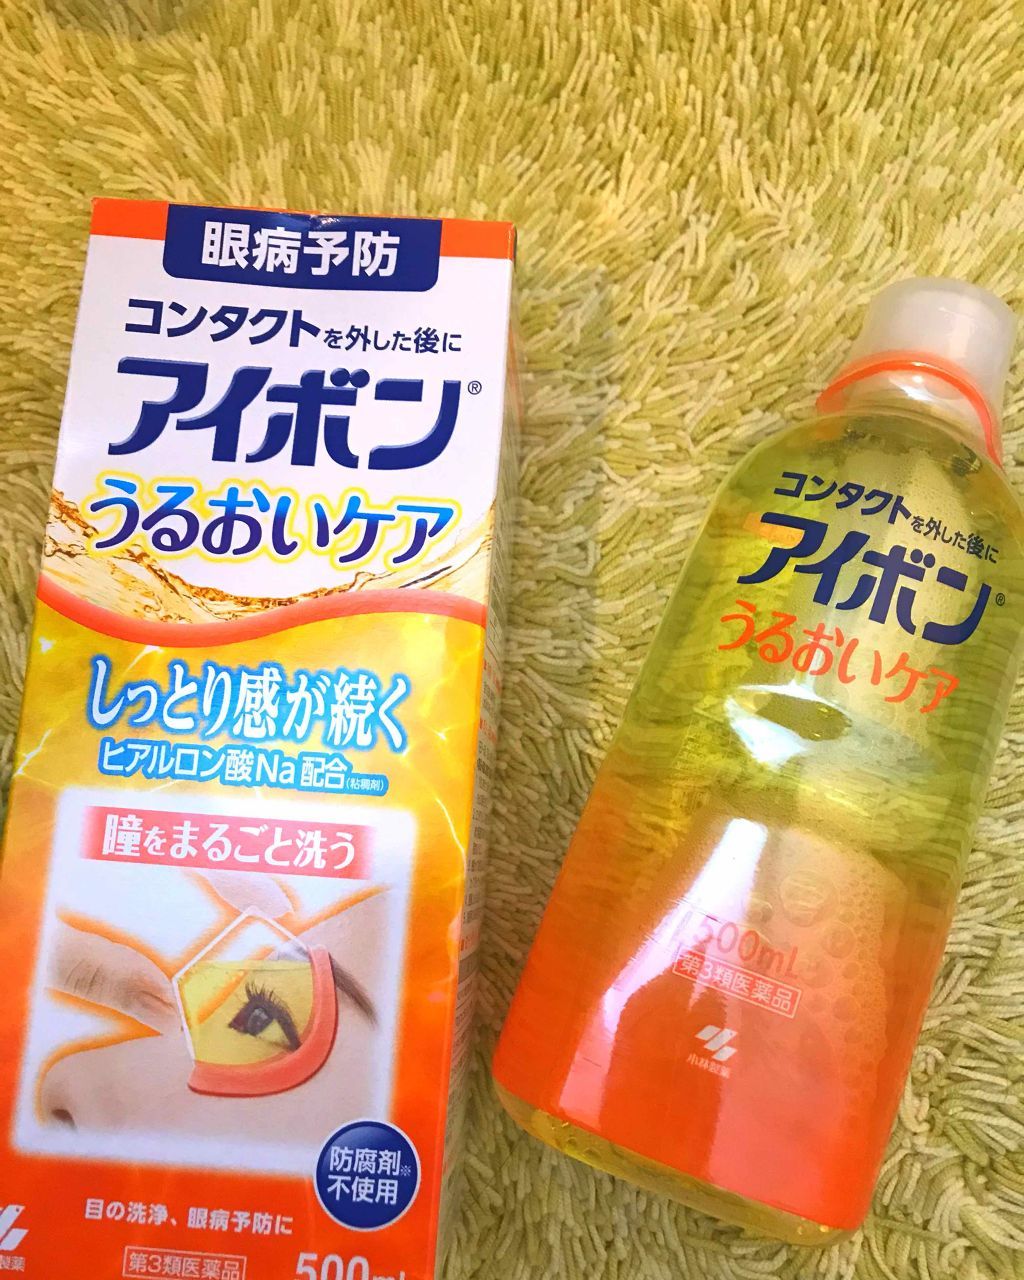  Nước Rửa Mắt Eyebon W Vitamin KOBAYASHI Nhật Bản -  500ML 